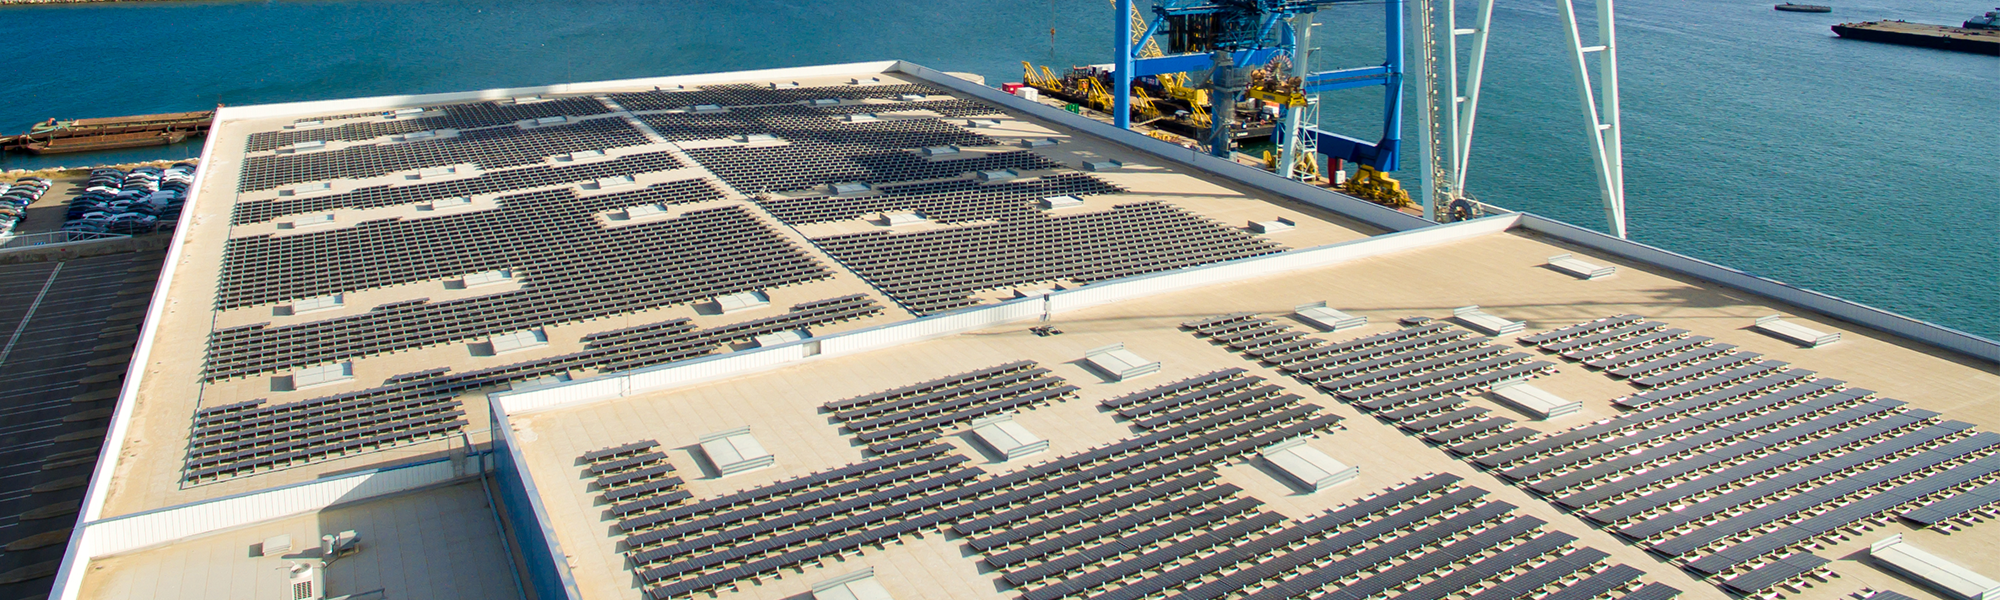 centrale photovoltaique en toiture port de sete - blog